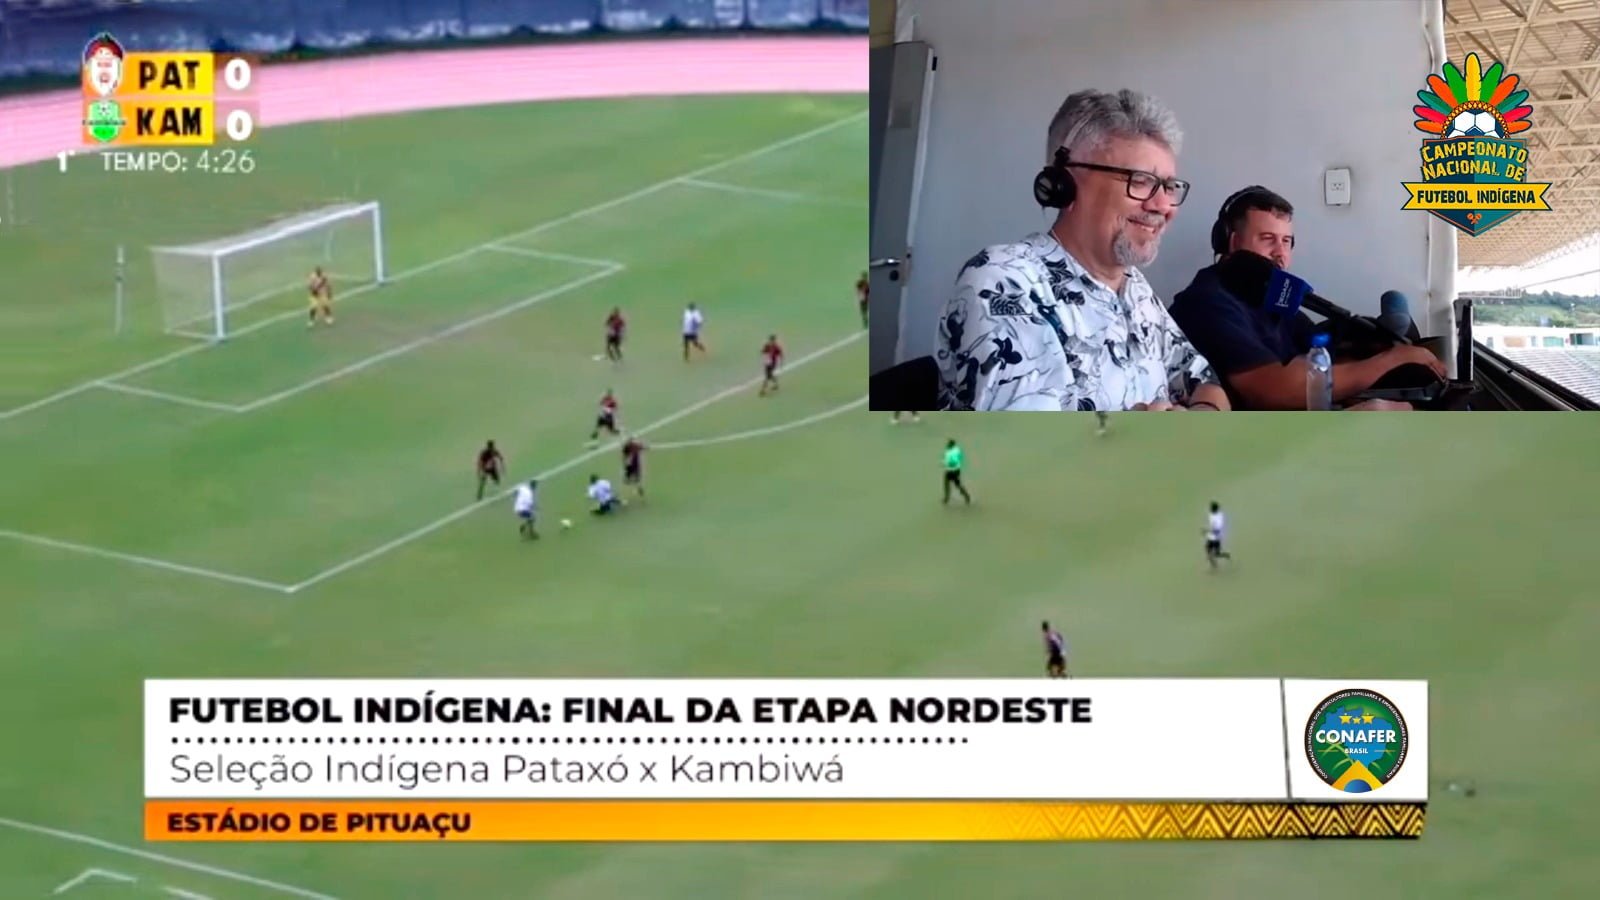 TV CONAFER: transmissão da final Nordeste do Campeonato Nacional Indígena teve audiência recorde